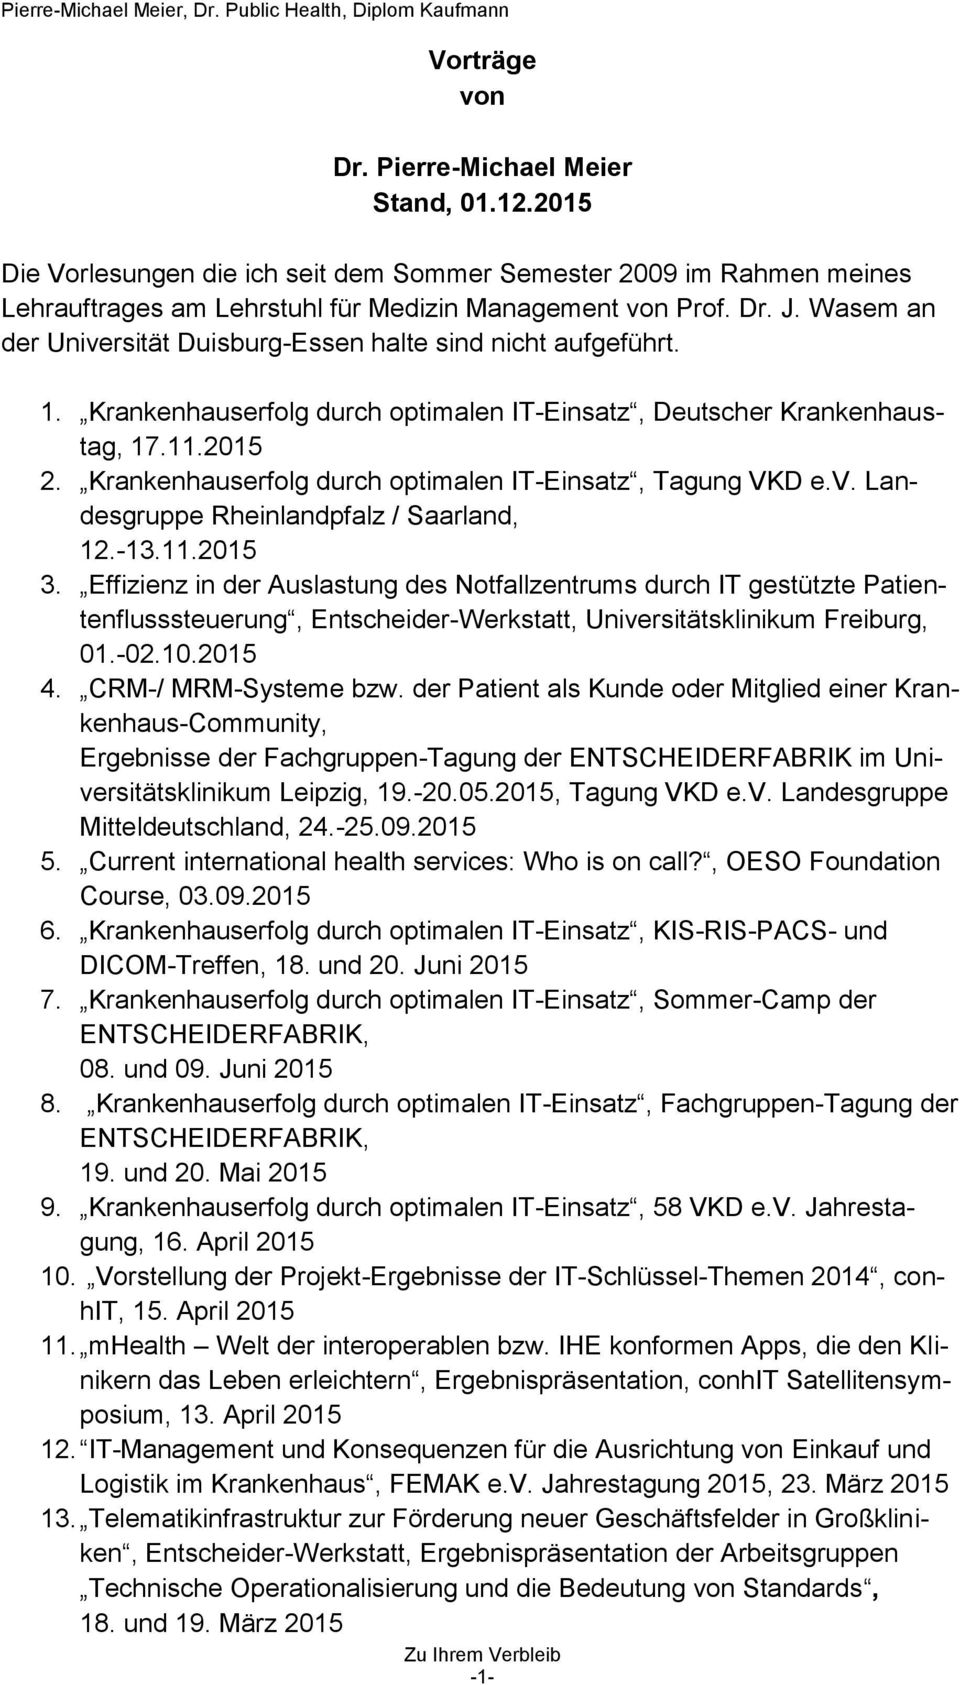 Krankenhauserfolg durch optimalen IT-Einsatz, Tagung VKD e.v. Landesgruppe Rheinlandpfalz / Saarland, 12.-13.11.2015 3.